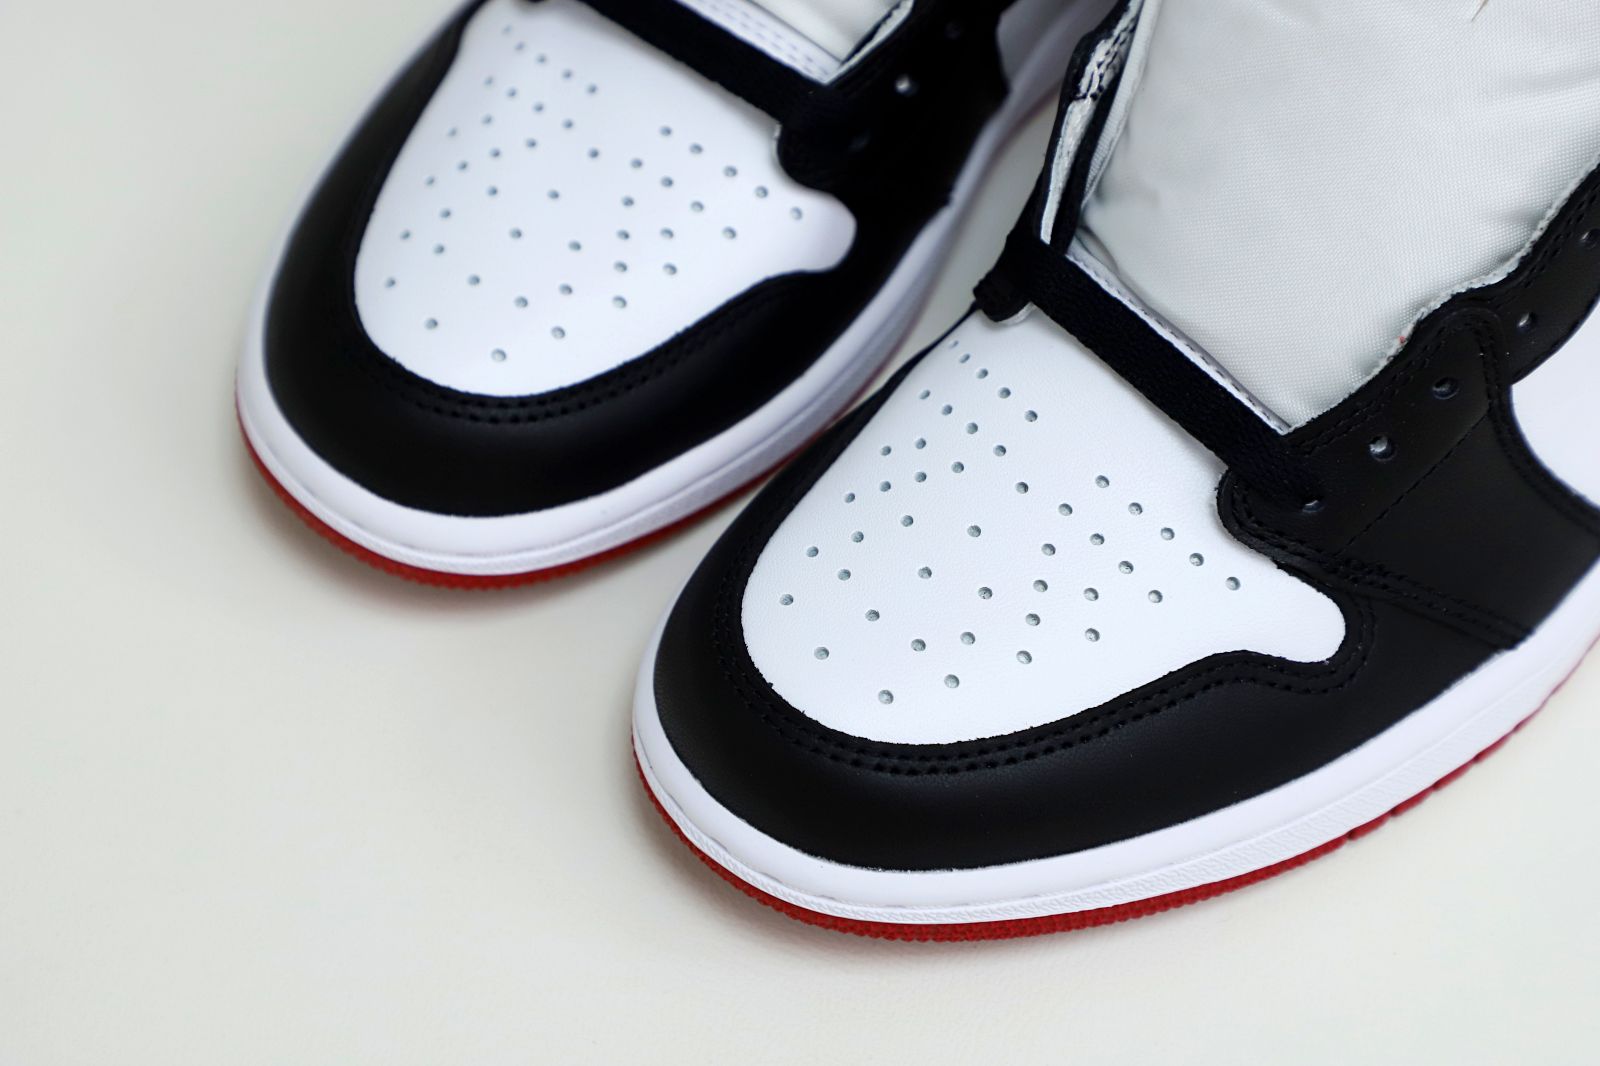 Air Jordan 1 Retro Black Toe (2016) - 555088 125